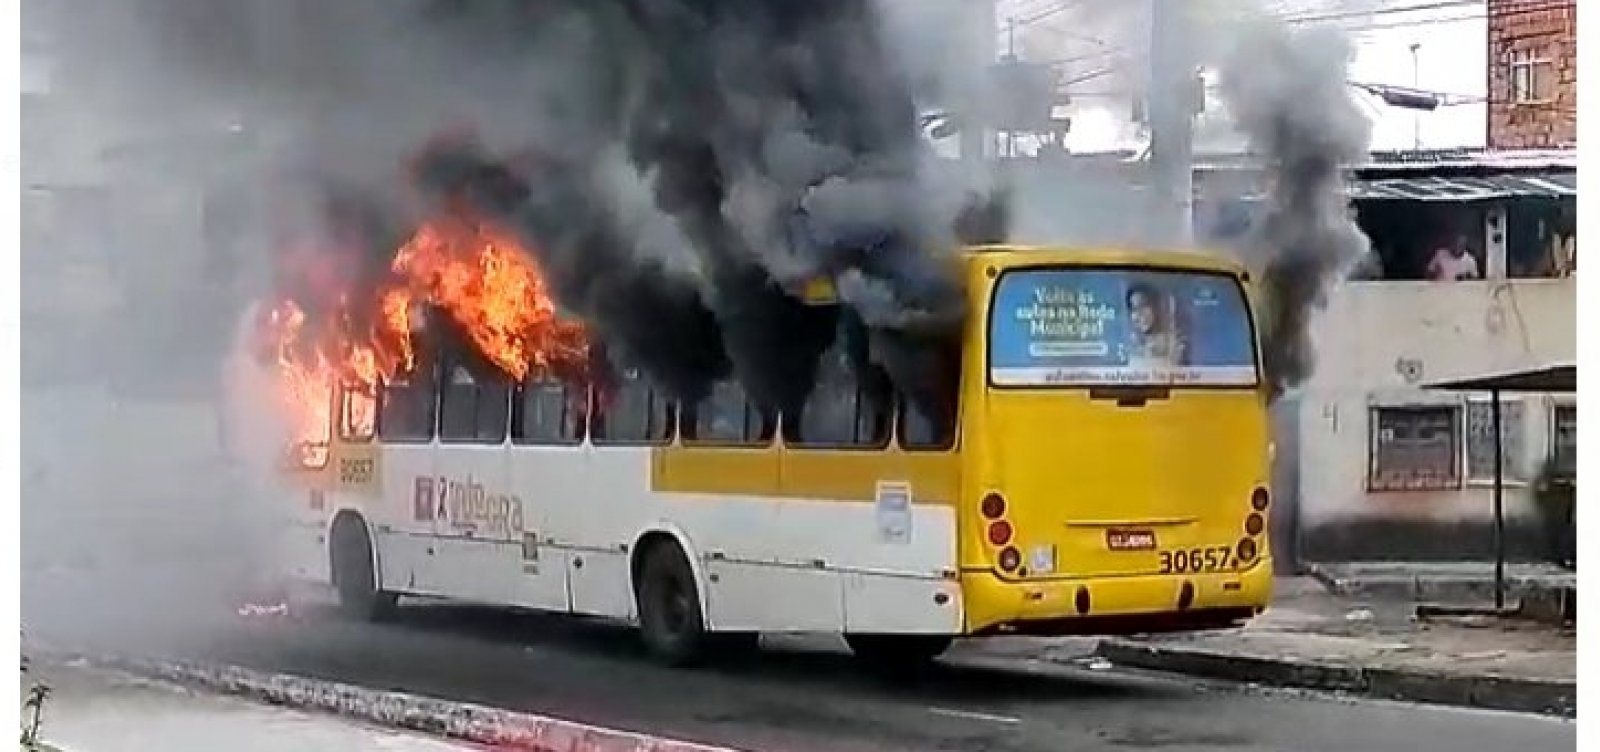 Vídeo: Grupo armado coloca fogo em ônibus na Avenida Suburbana